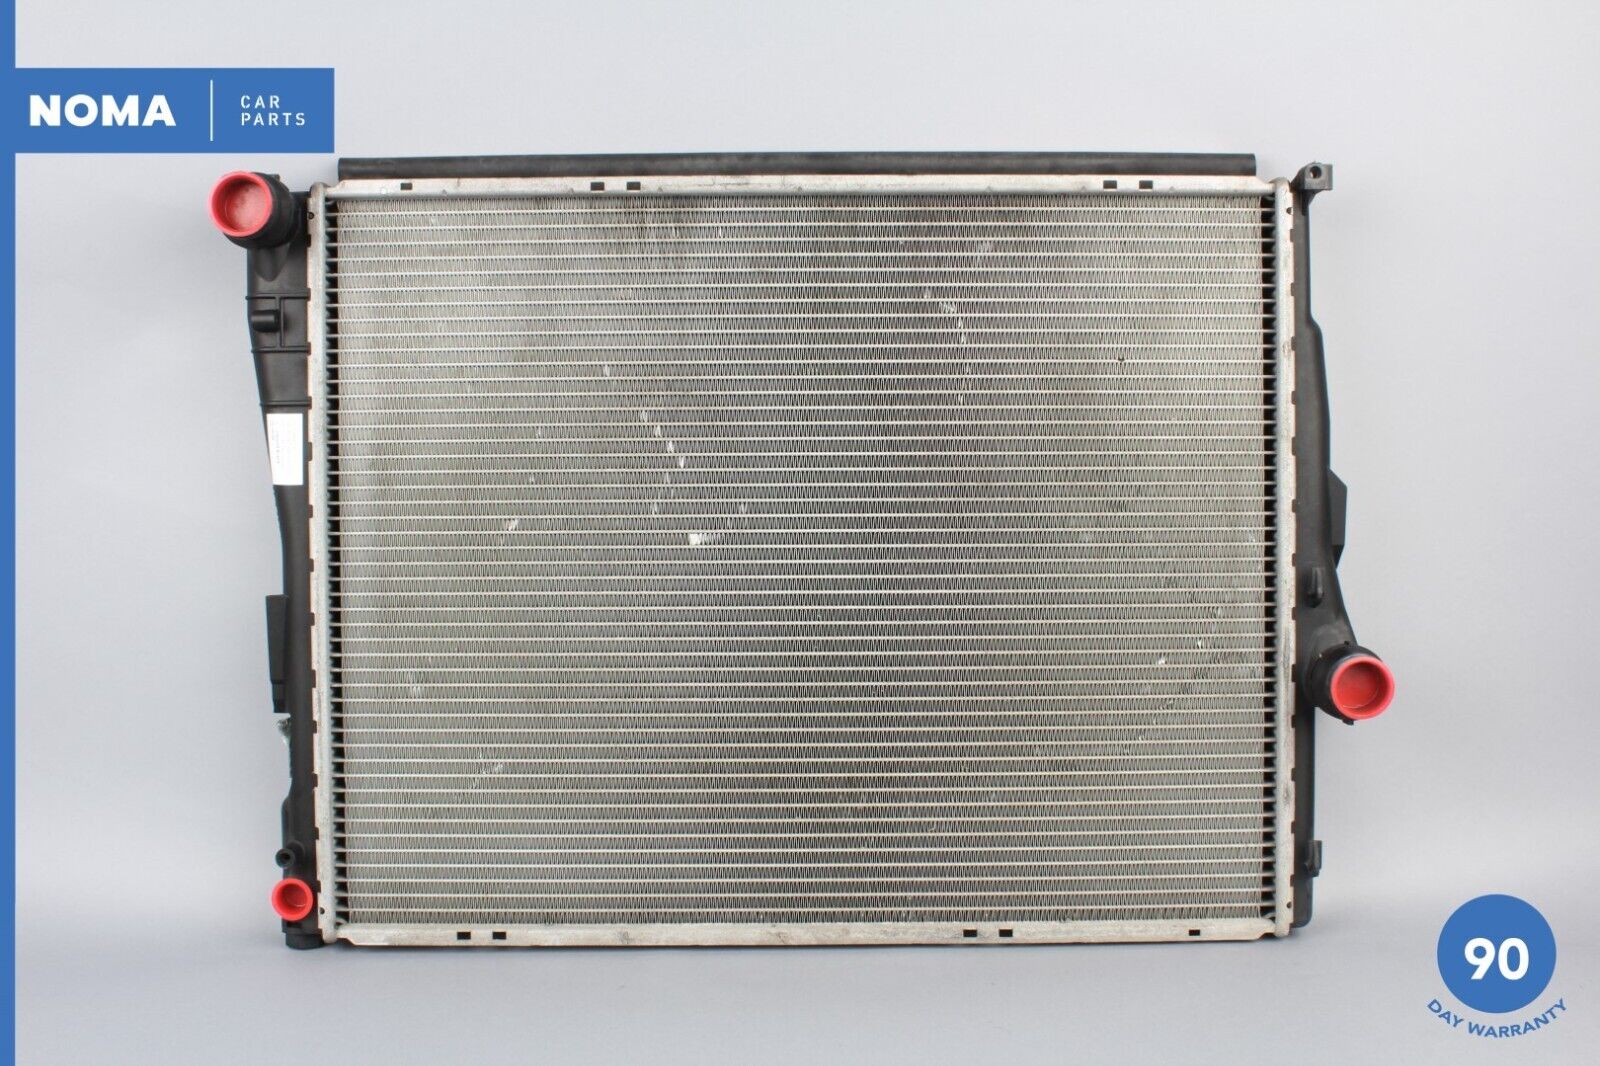 03-05 BMW Z4 E85 Roadster Engine Motor Cooling Radiator Assembly 17119071517 OEM